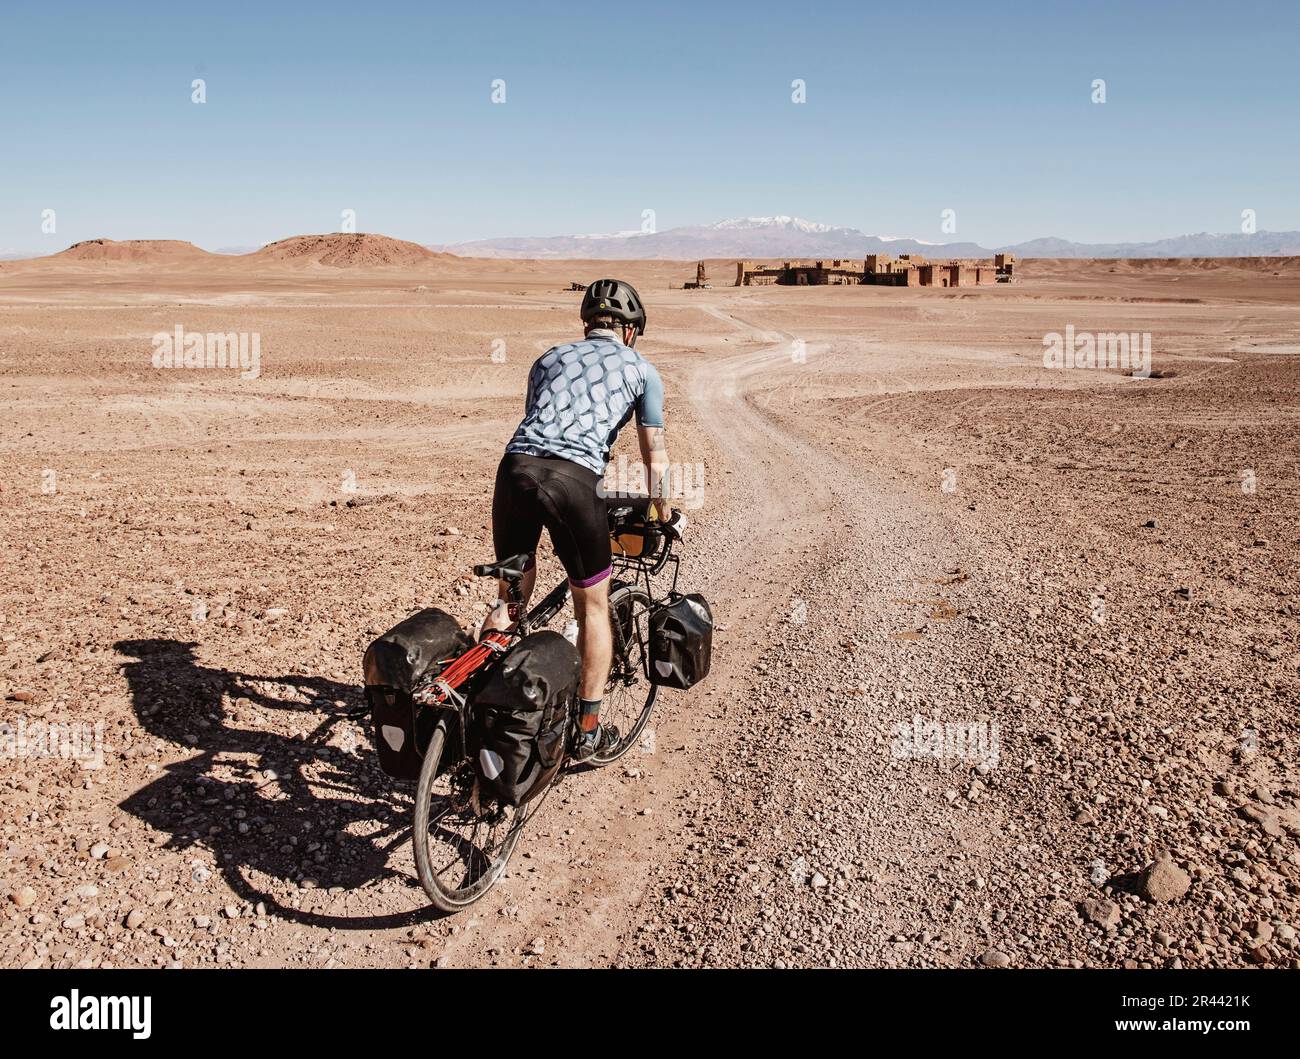 A cyclist rides through a desert toward ruins, Ouarzazate, Morocco Stock Photo